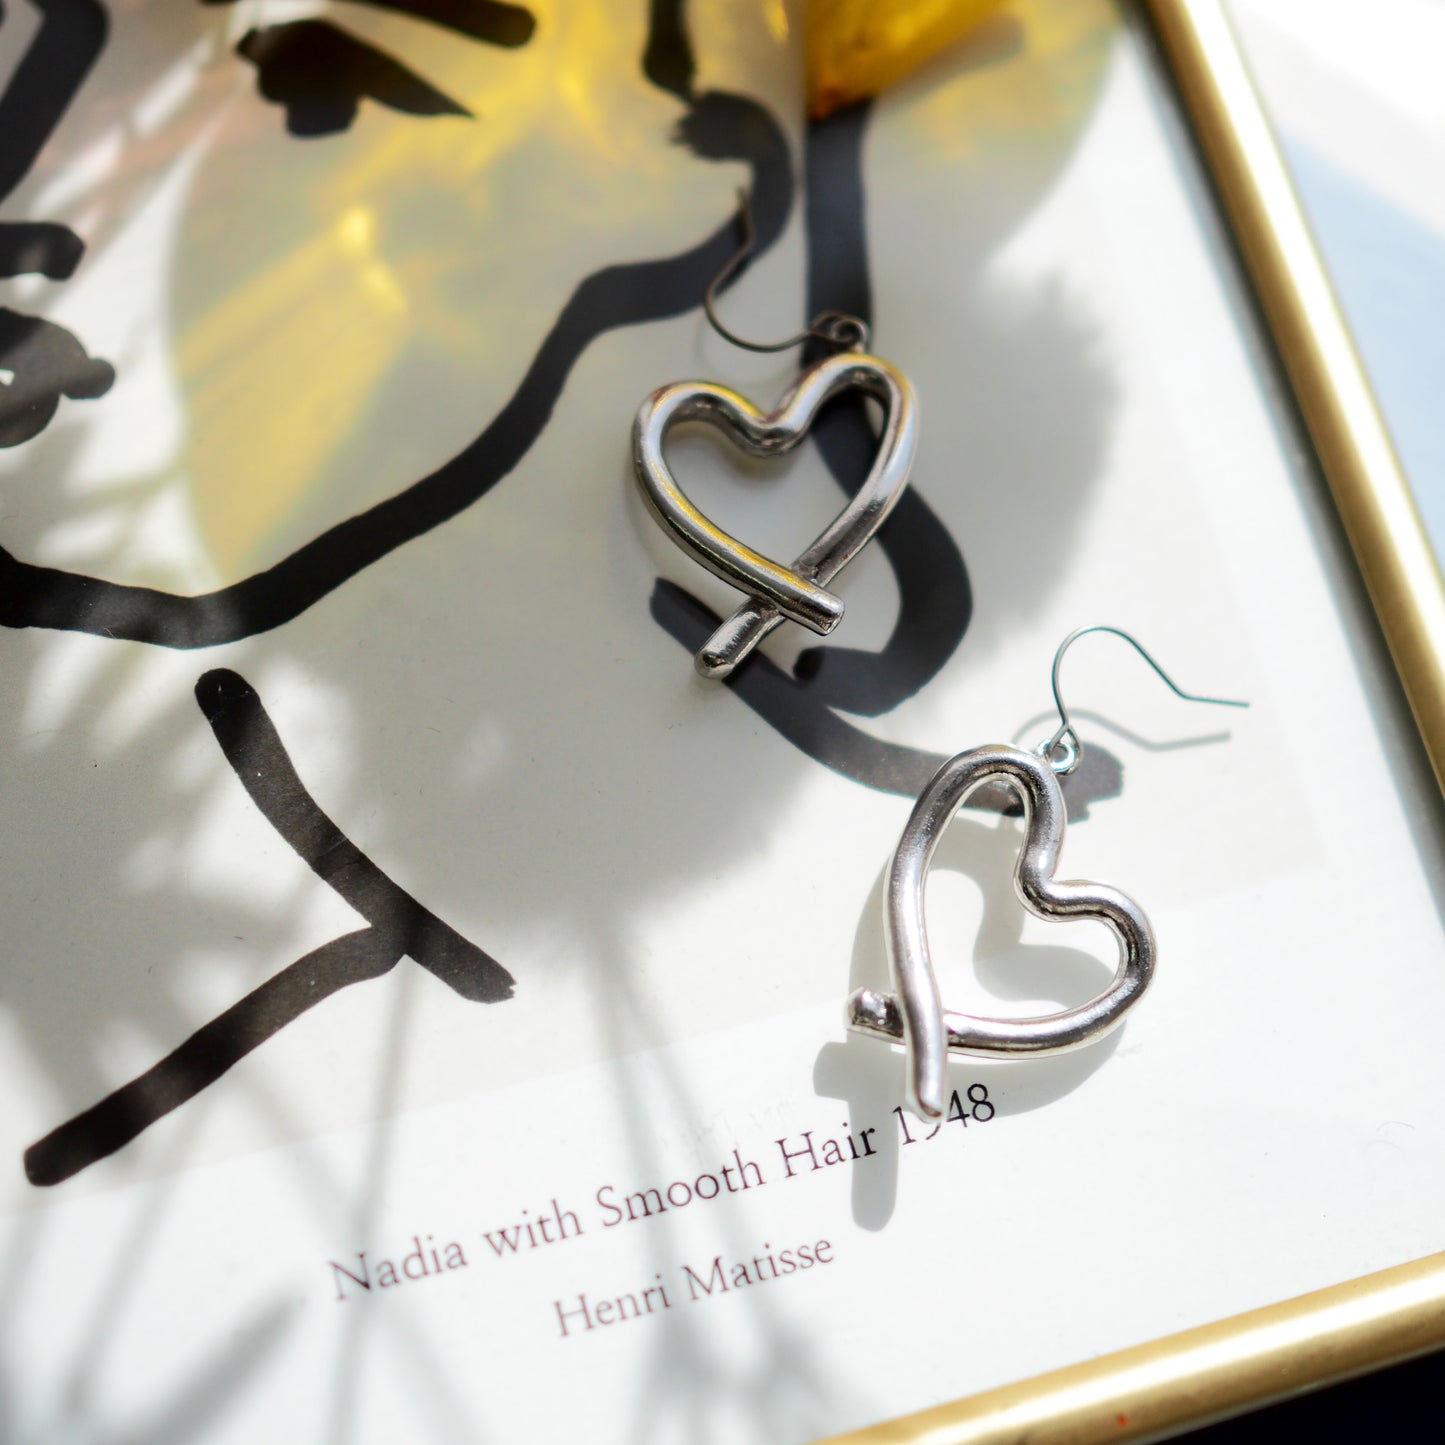 Scribble Heart Pierce/Earrings